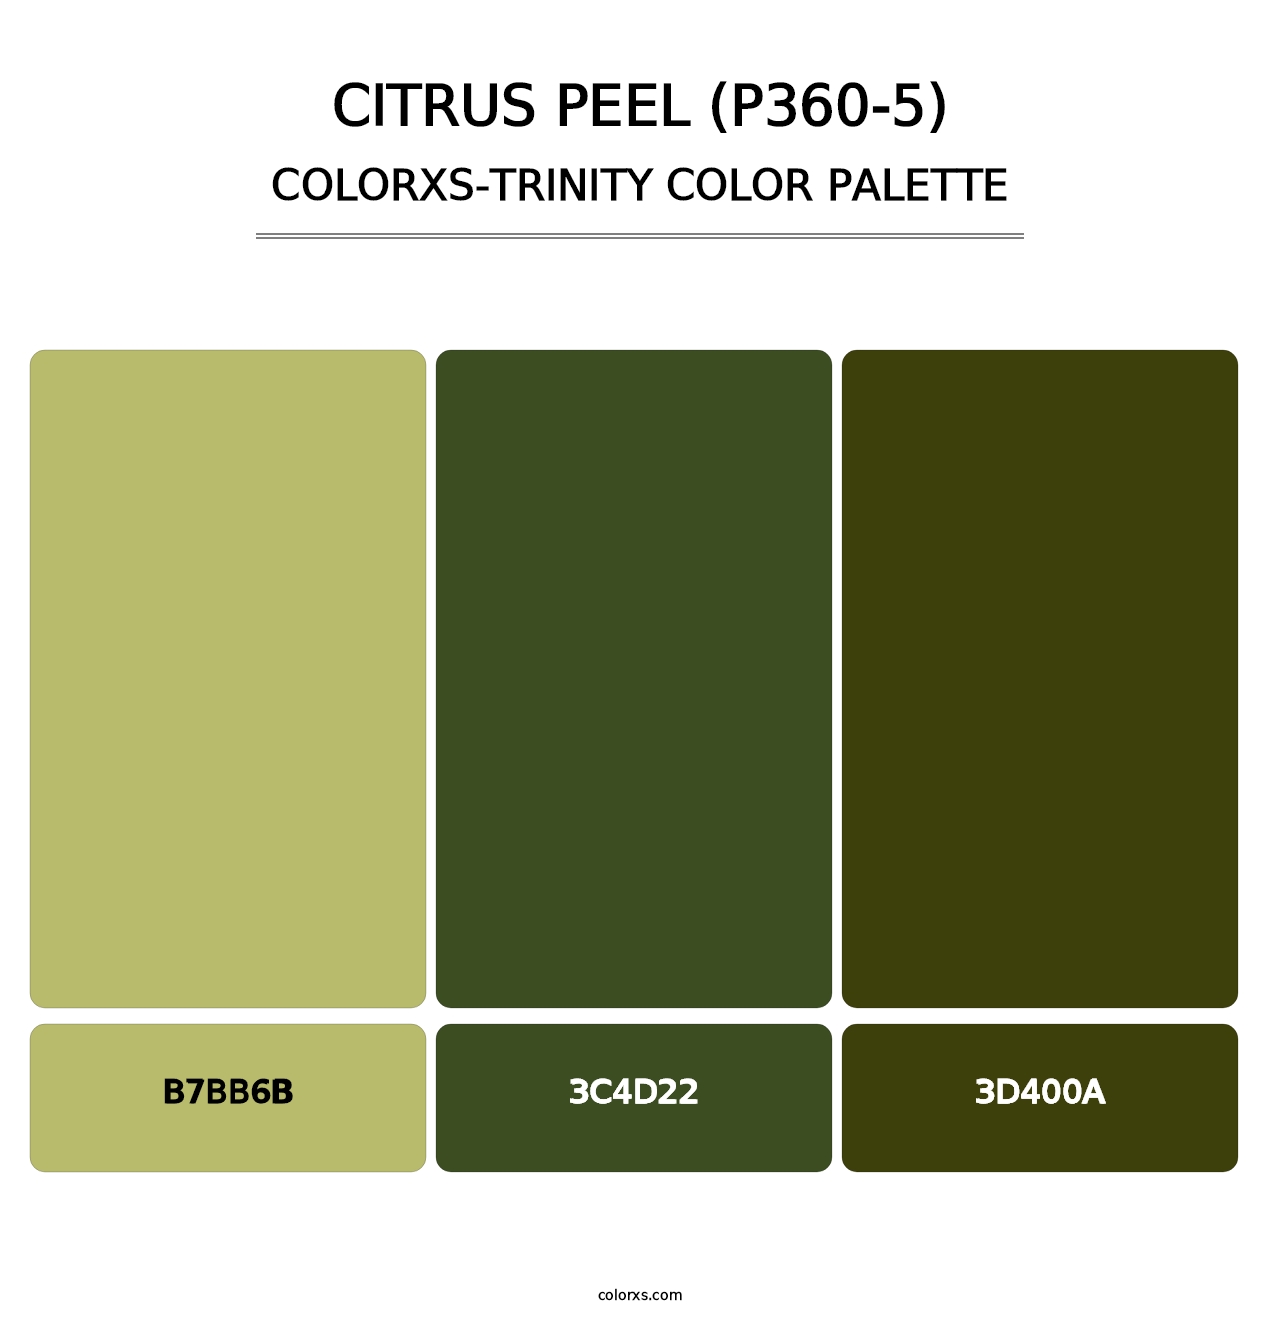 Citrus Peel (P360-5) - Colorxs Trinity Palette